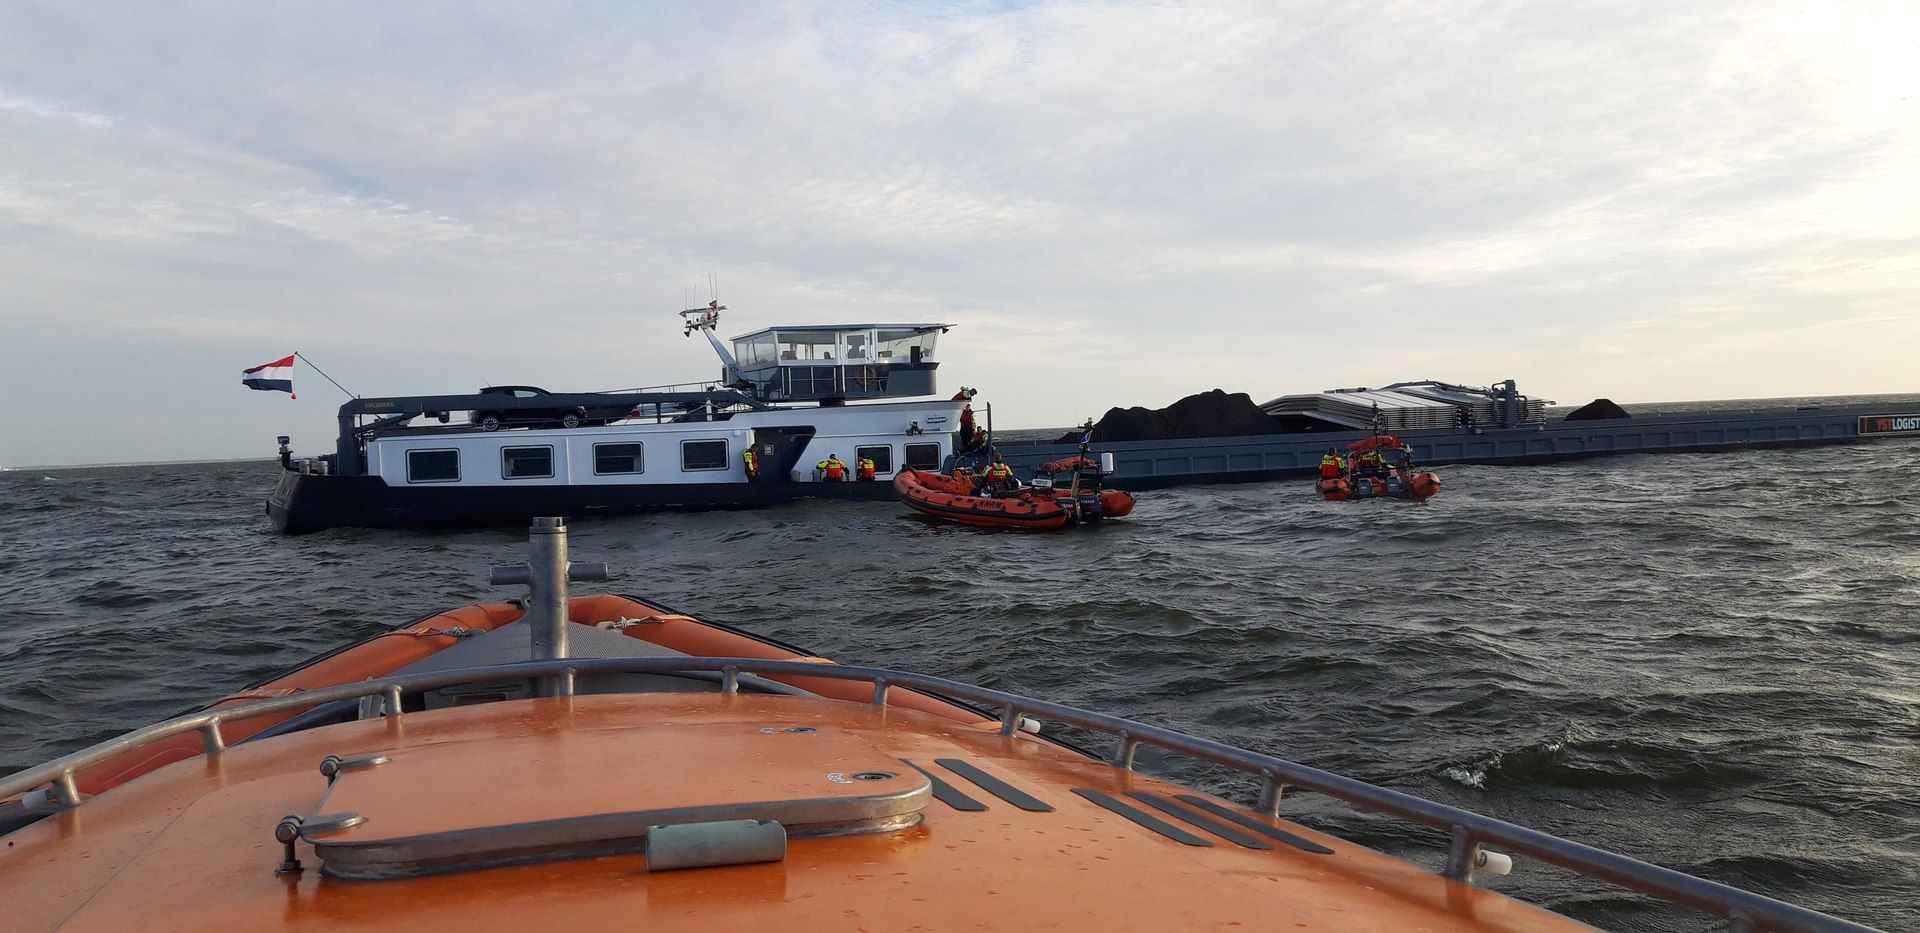 Binnenvaartschip in nood op het IJsselmeer, Mei 2020. KNM Enkhuizen